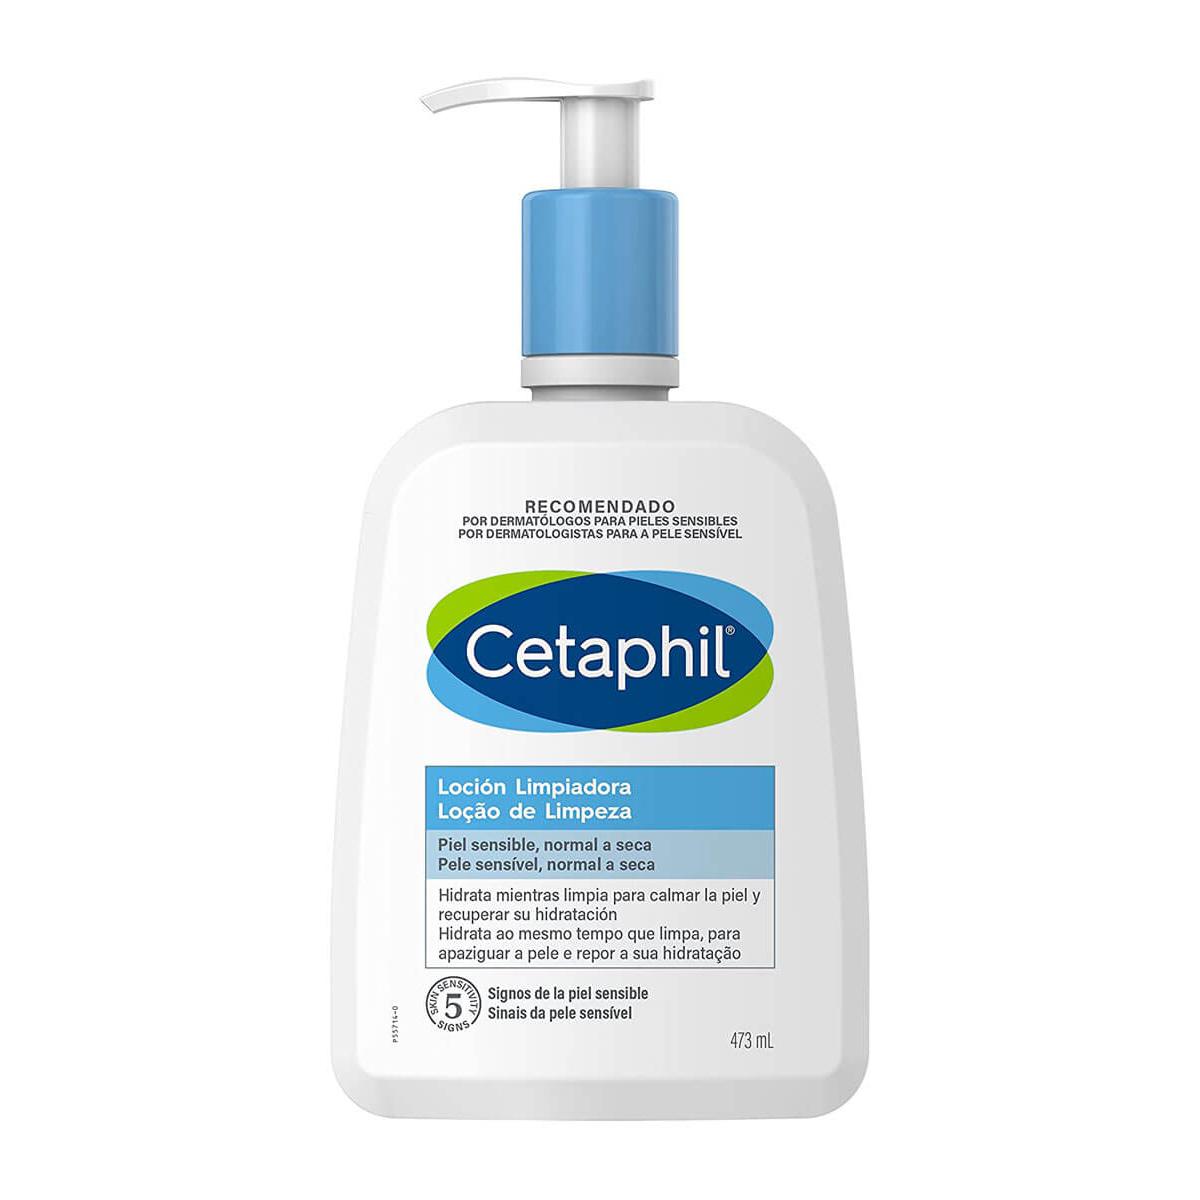 Cetaphil - Cetaphil locion limpiadora 473 ml